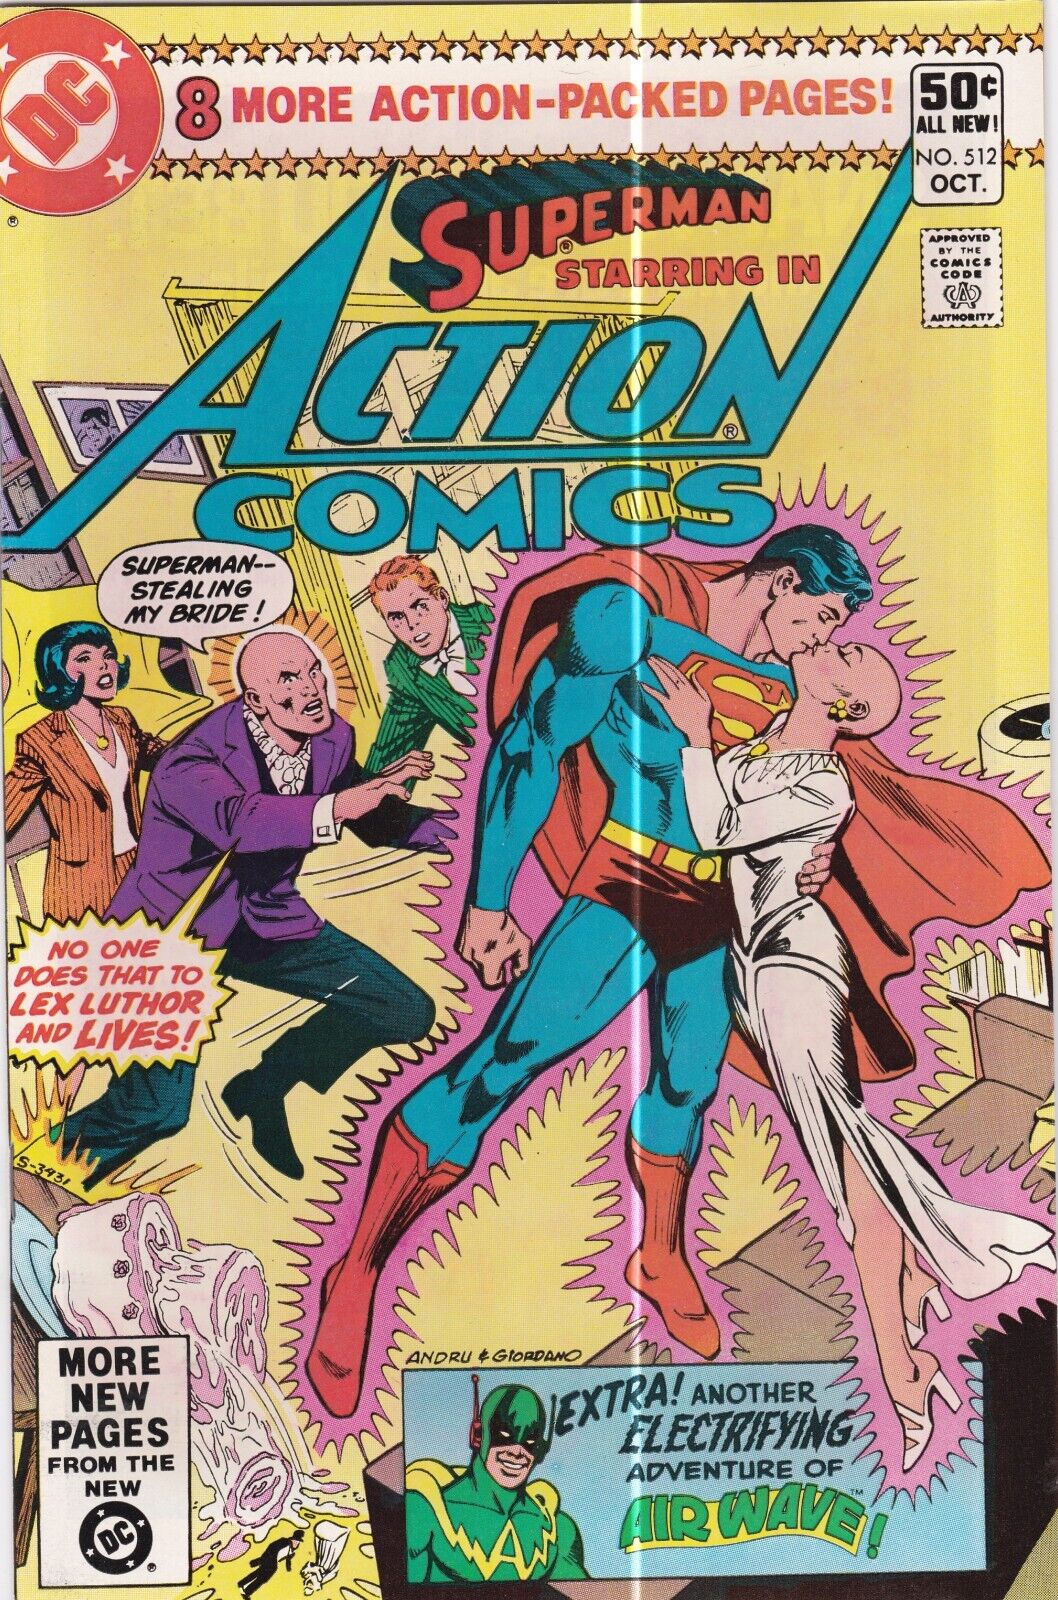 Action Comics #512: DC Comics. (1980)  VF+  (8.5)